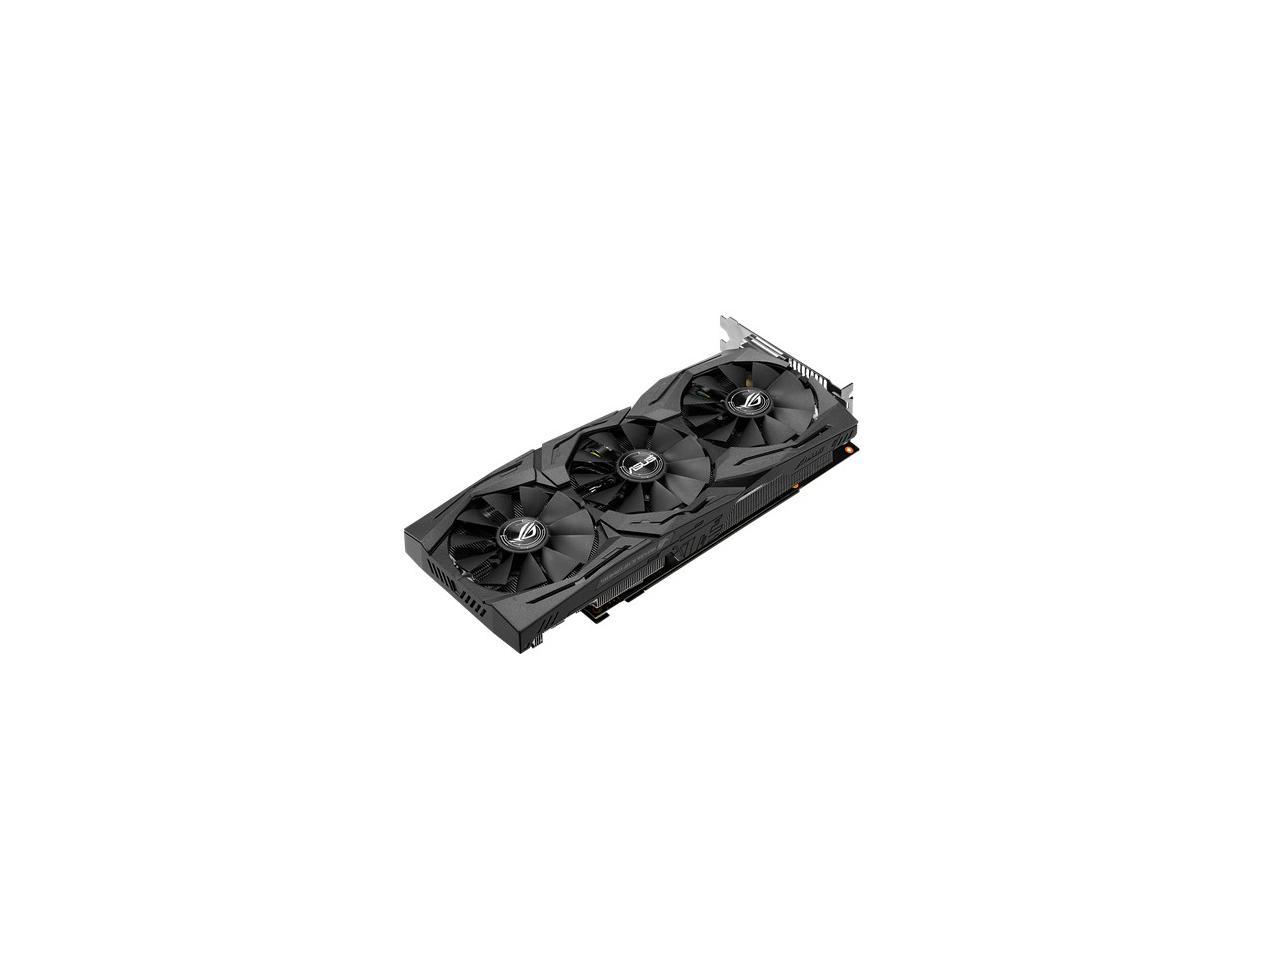 ASUS ROG Strix GeForce GTX 1060 Advanced edition 6GB GDDR5 with Aura Sync RGB Video Card (ROG-STRIX-GTX1060-A6G-GAMING)